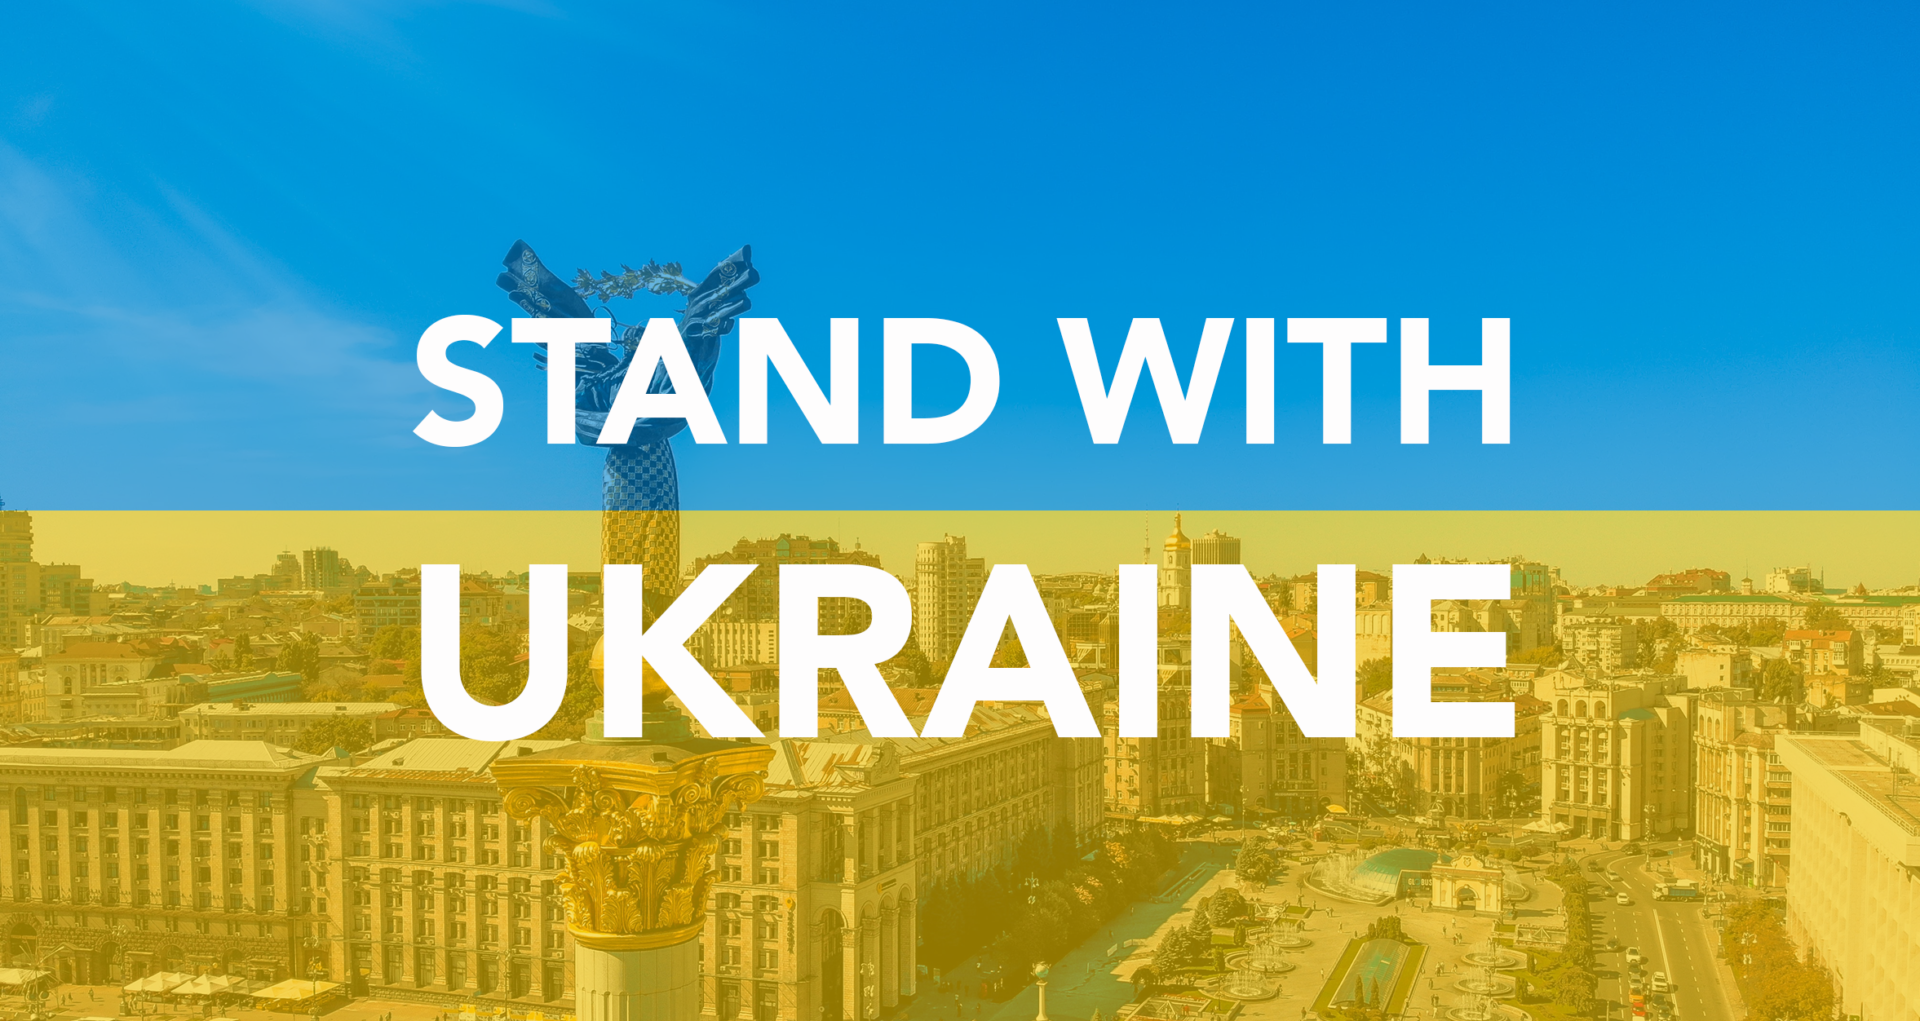 UKRAINAS SAK ÄR VÅR – 10 punkter för Ukraina